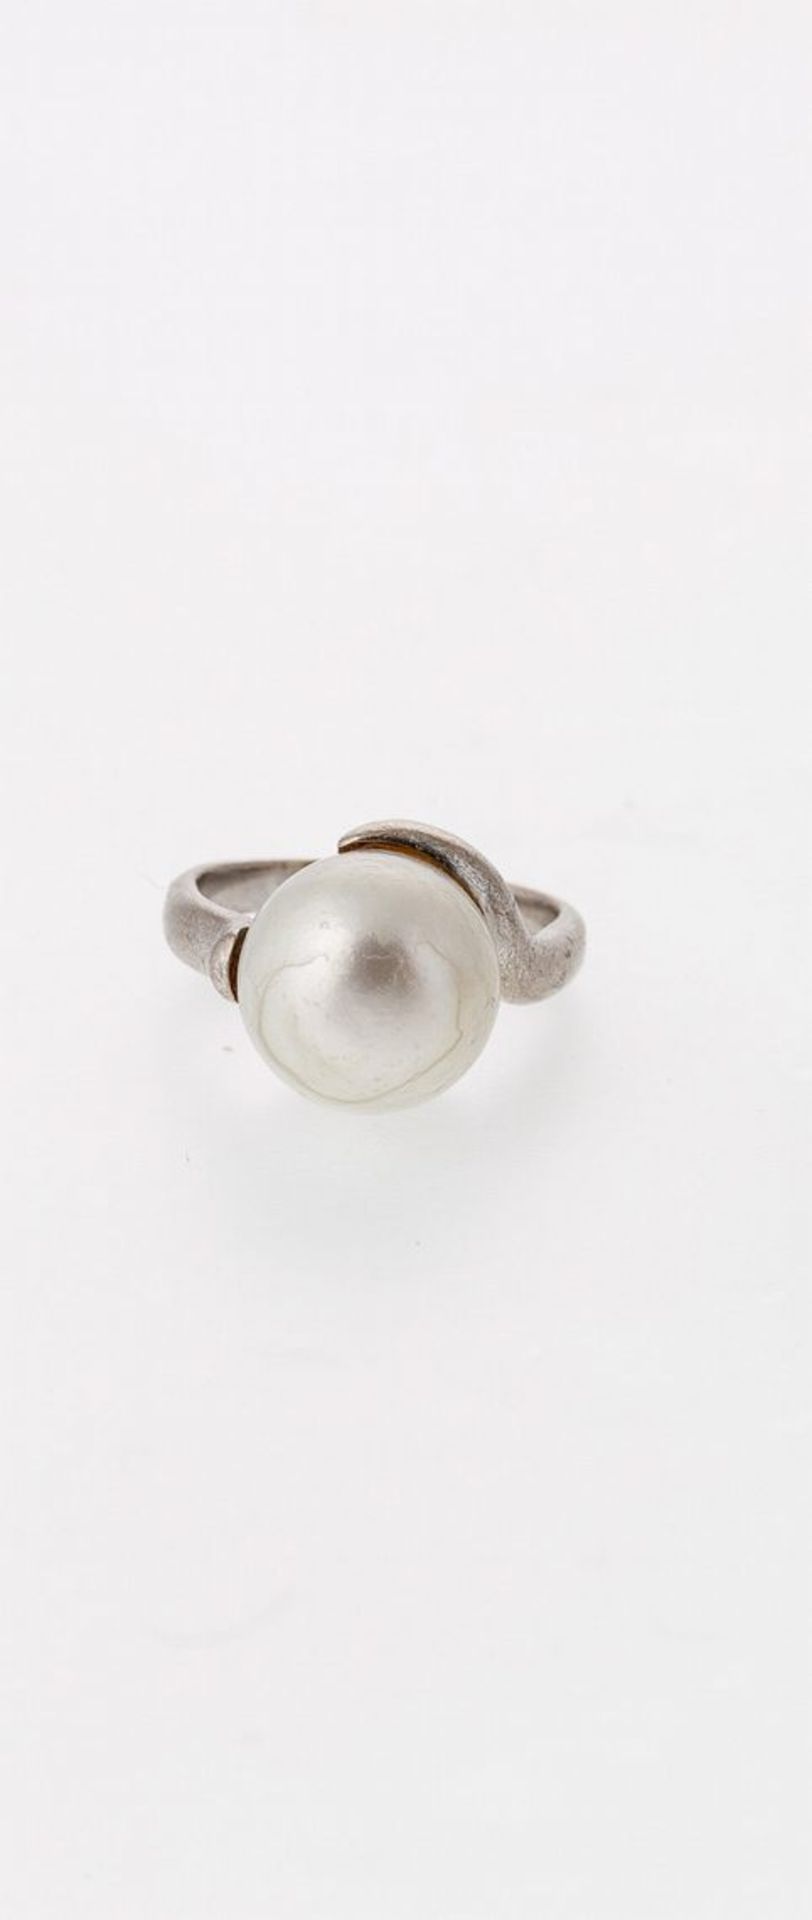 Ring mit PerleWG, 750. Gewundene Schiene besetzt mit einer Zuchtperle (Ø 12 mm, best.). 9,3 g.